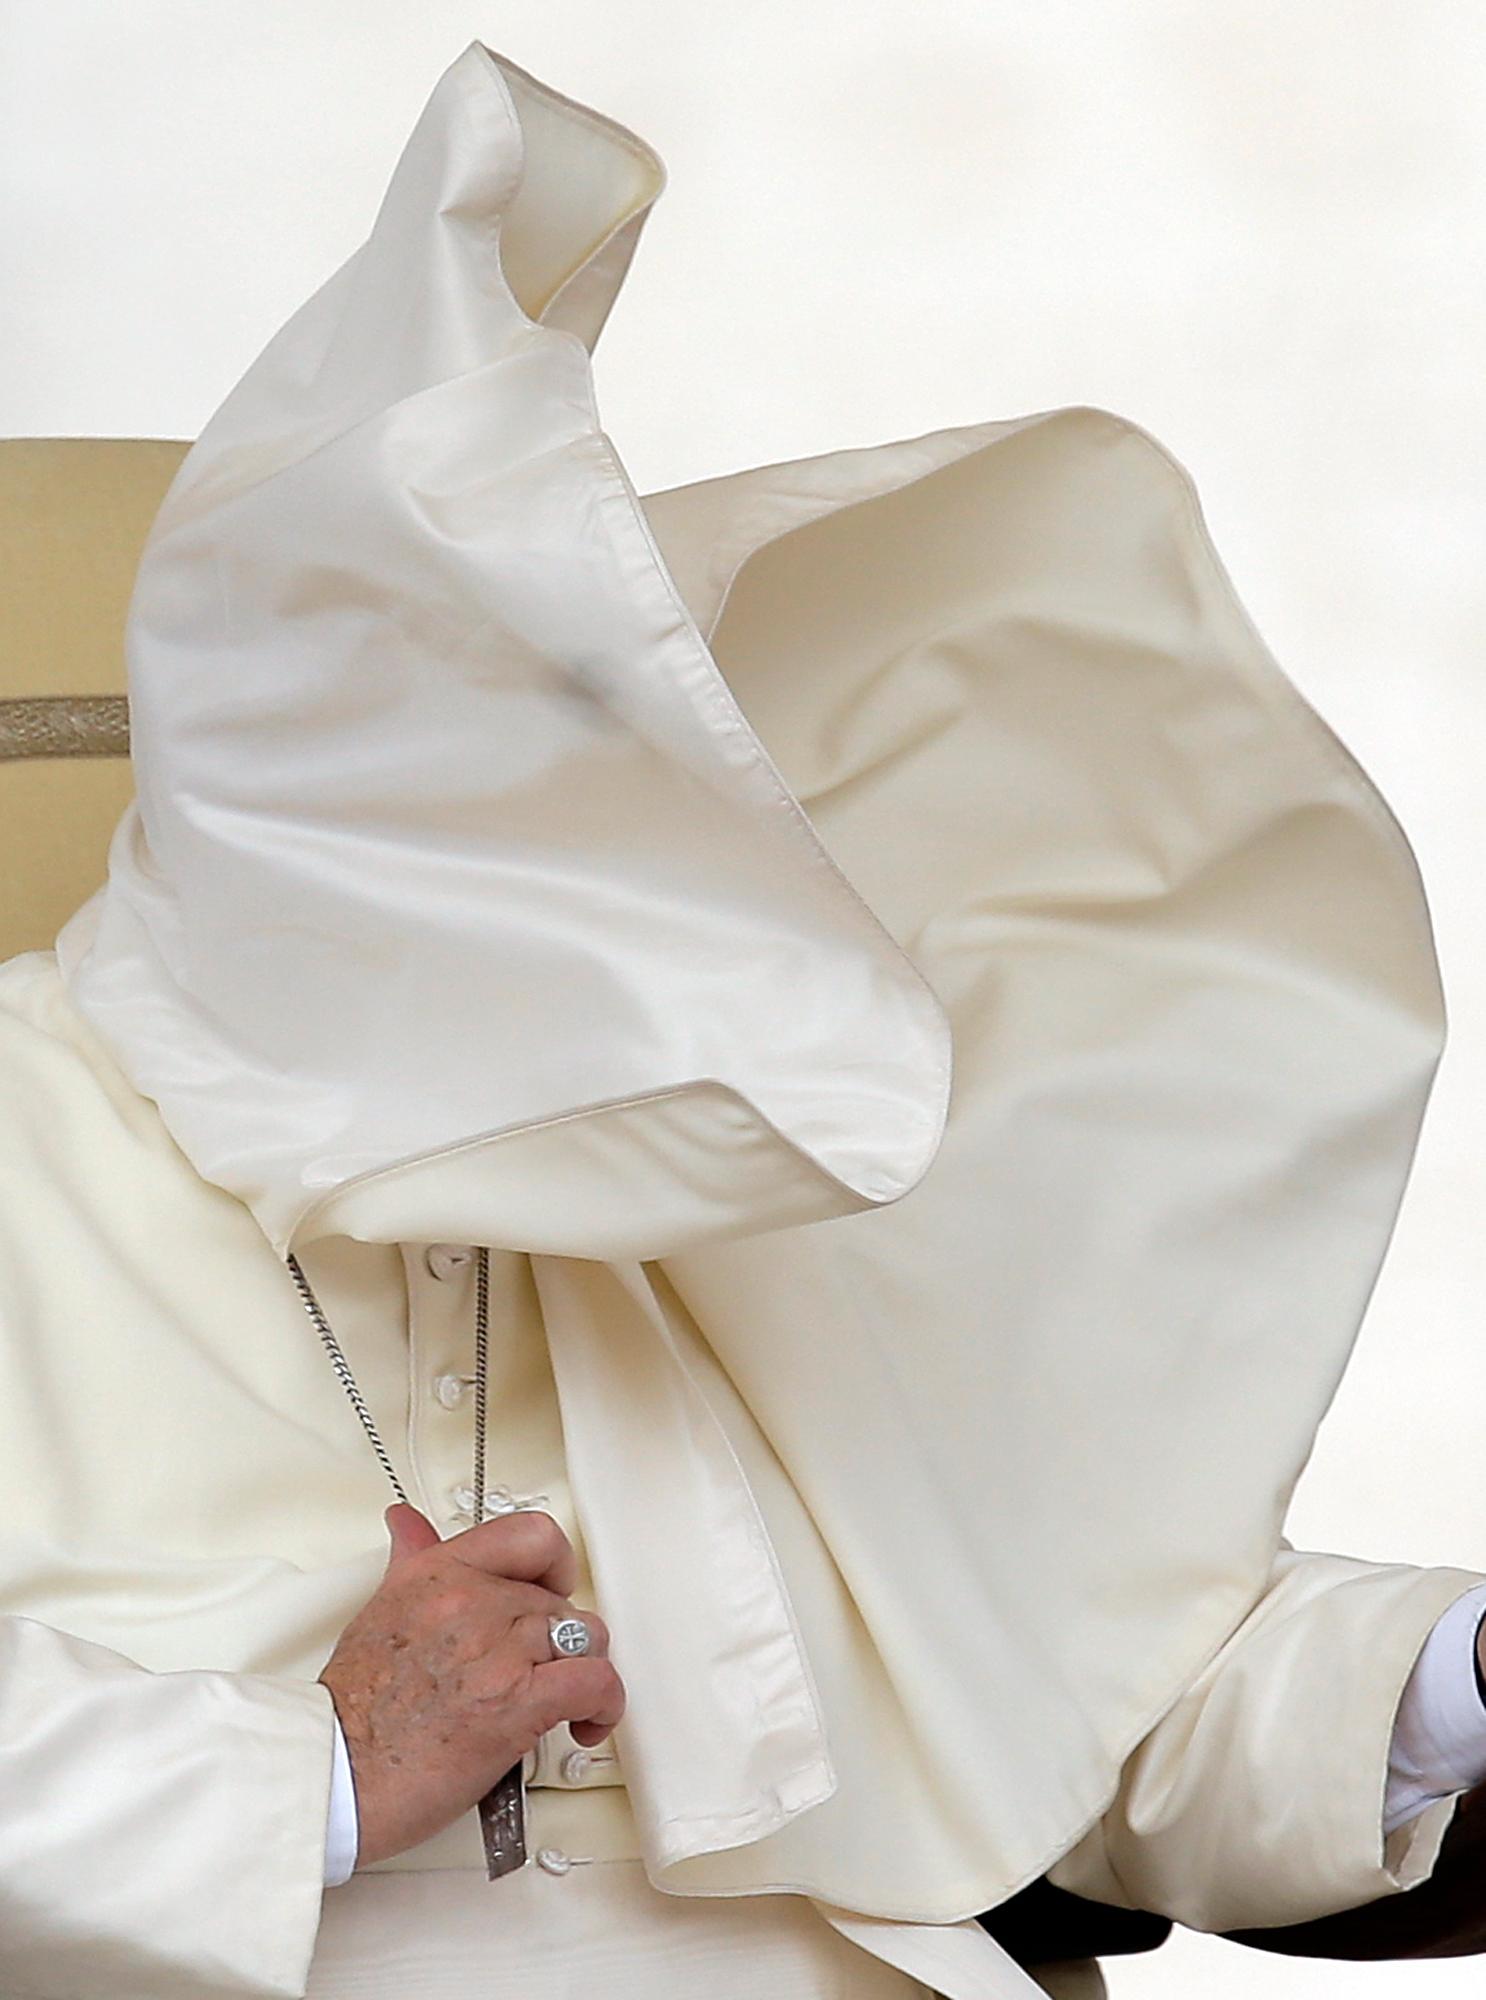 Blåsten ställde till den för påven Franciskus när han skulle tala på Petersplatsen i Vatikanen.